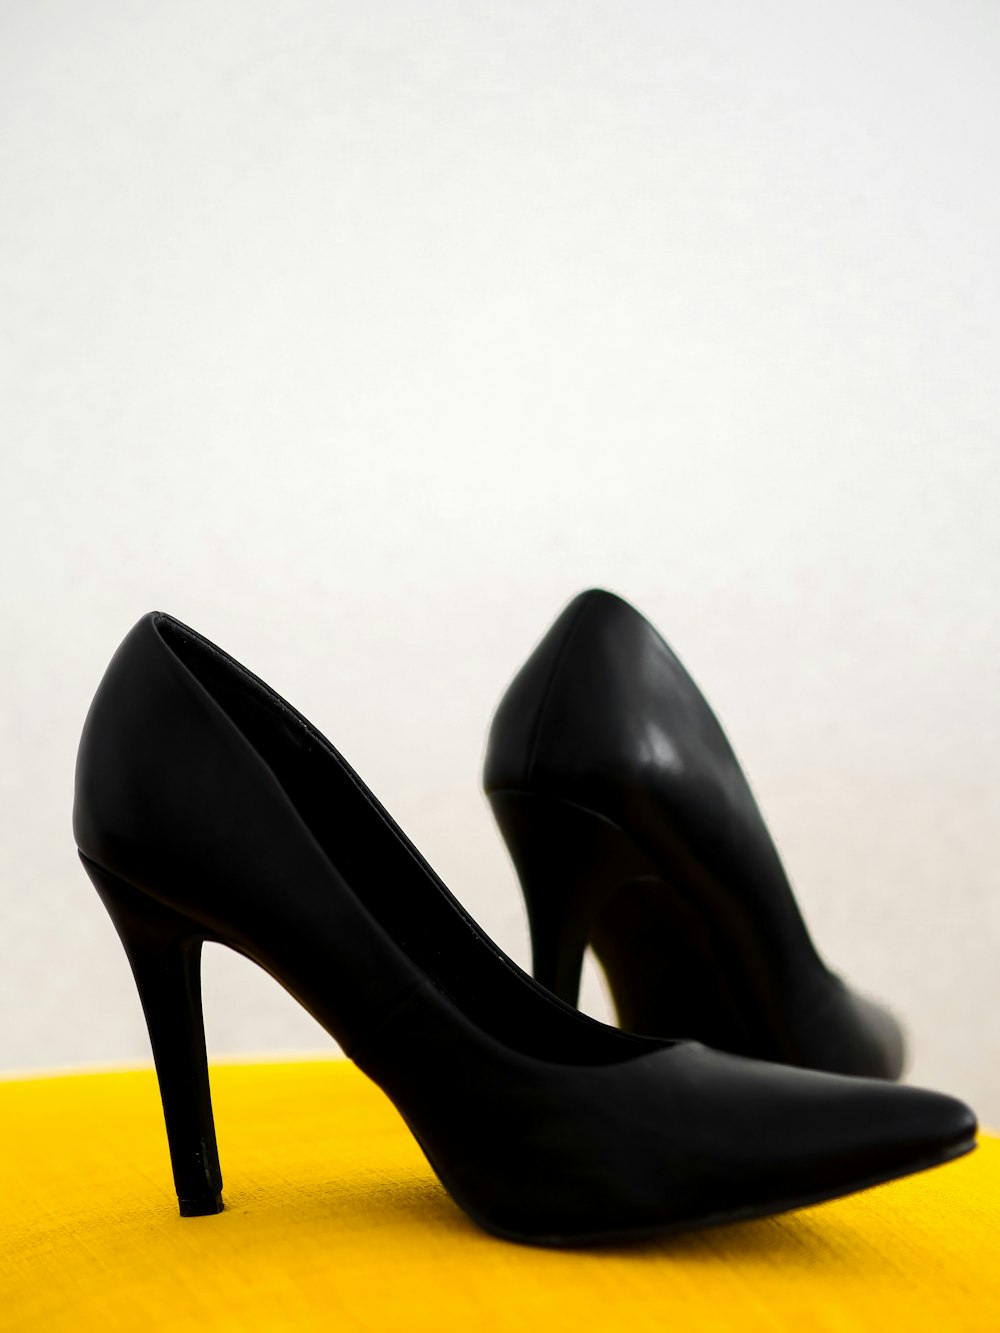 Foto zum Thema Schuhe mit schwarzen lederabsätzen auf gelbem stuhl –  Kostenloses Bild zu Frankreich auf Unsplash